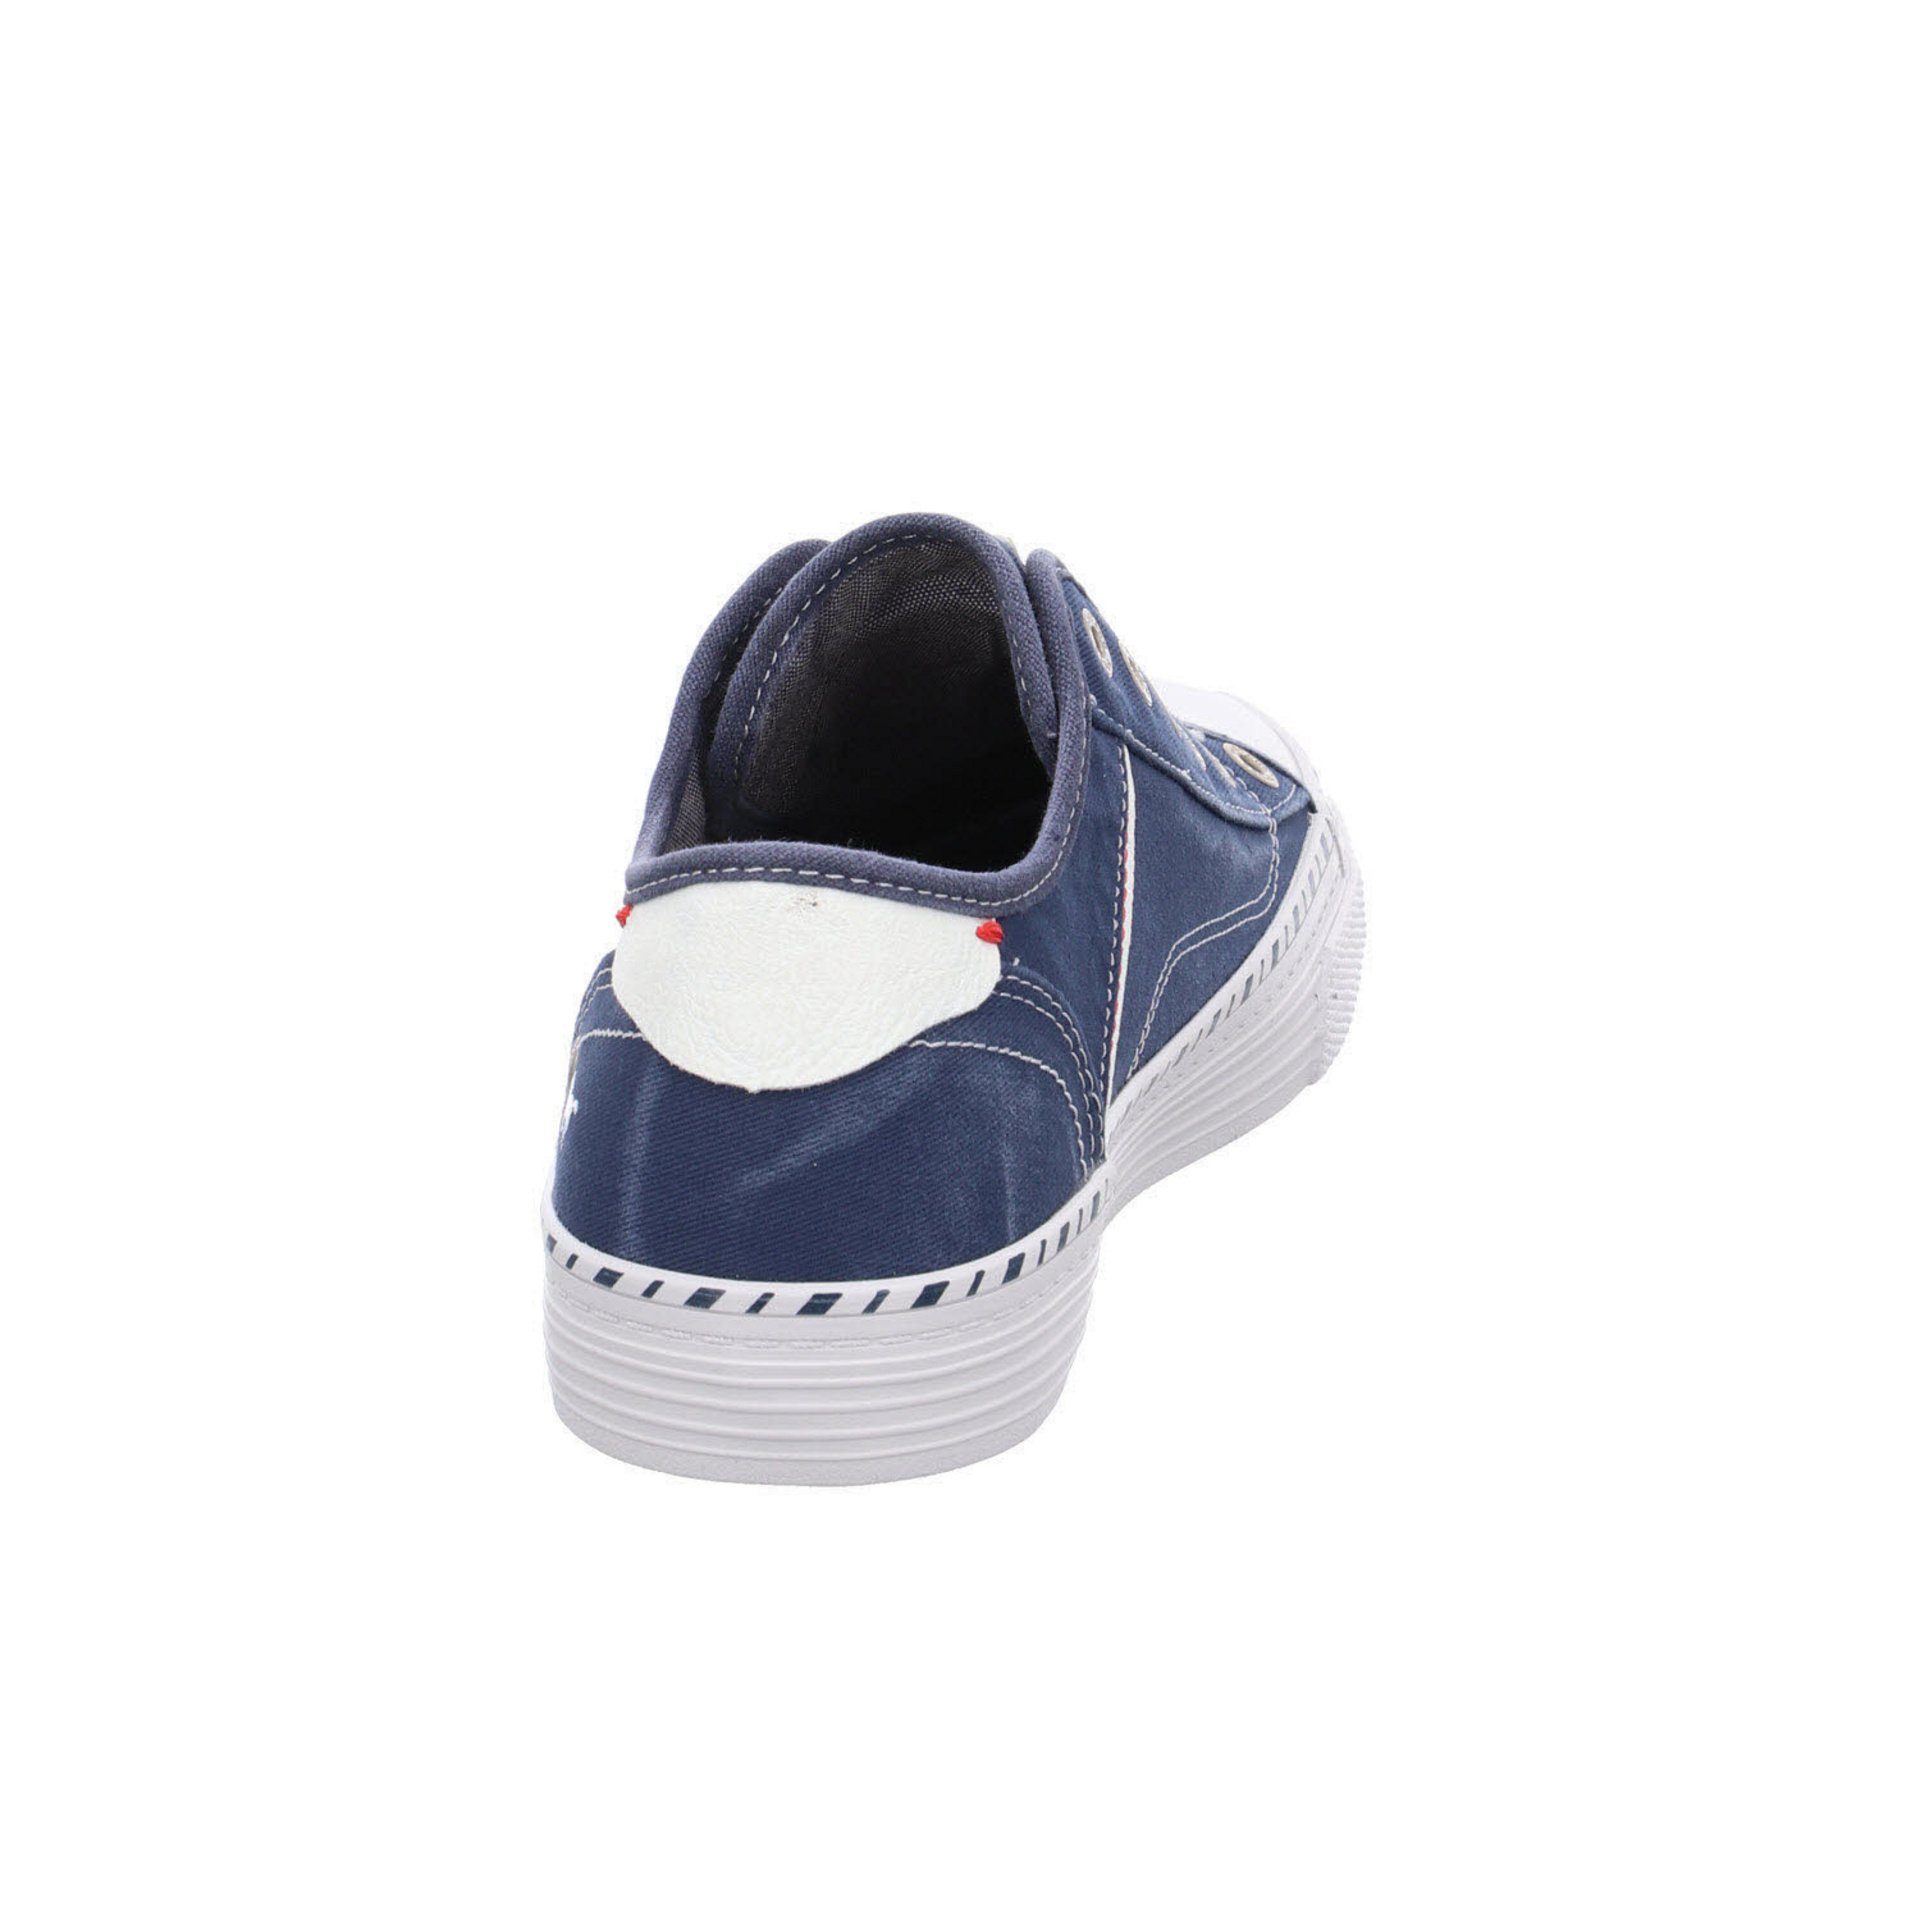 Damen Sneaker Sneaker Sport Schnürschuh Shoes Mustang jeansblau Halbschuhe Textil Schuhe